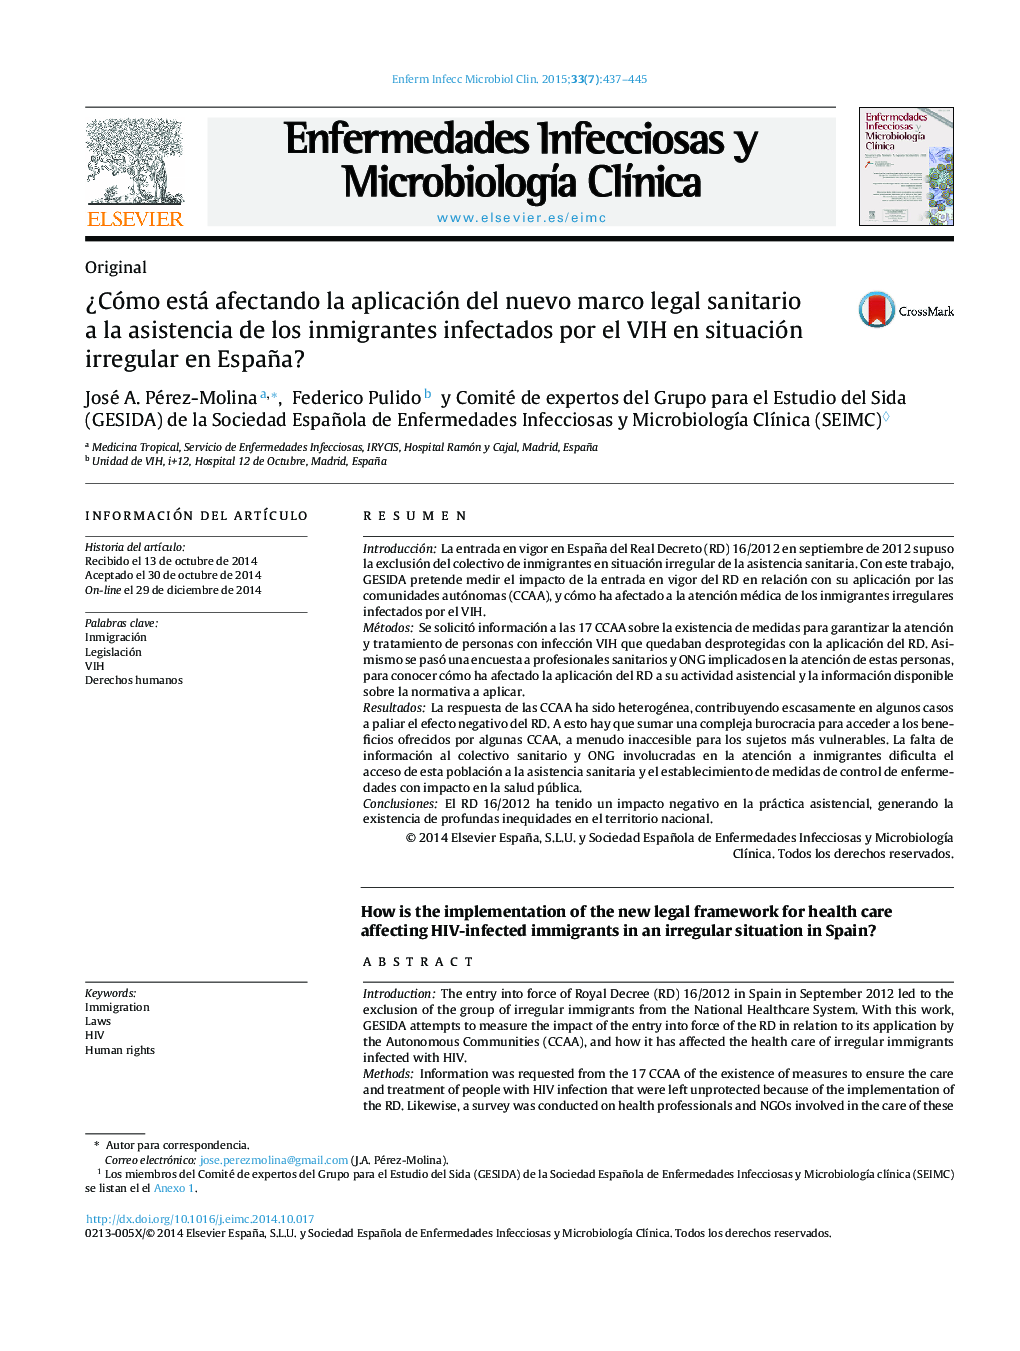 Â¿Cómo está afectando la aplicación del nuevo marco legal sanitario a la asistencia de los inmigrantes infectados por el VIH en situación irregular en España?